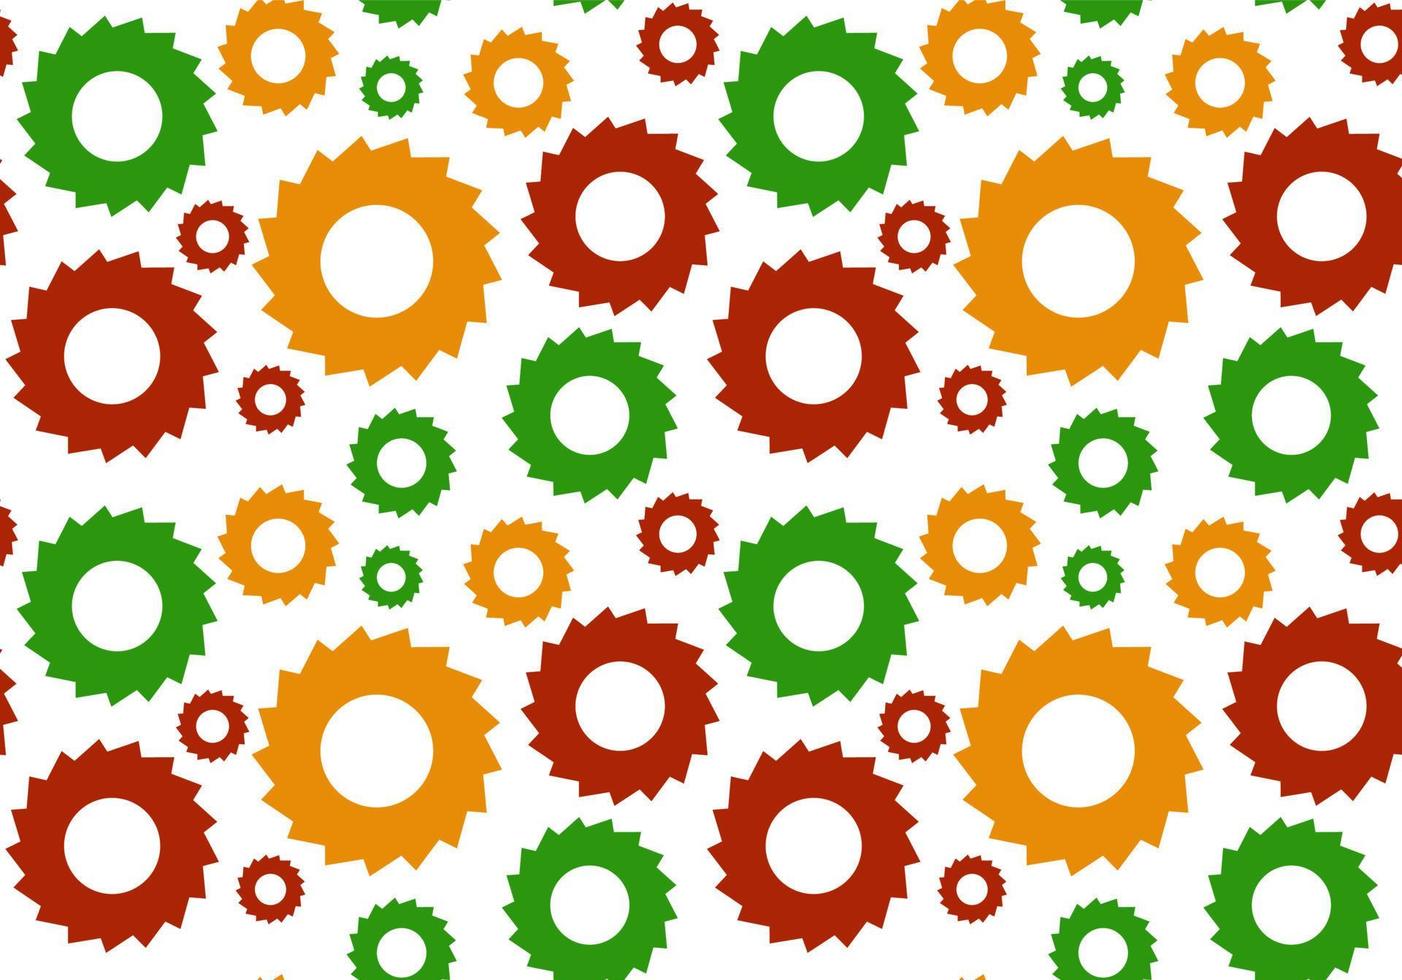 padrão geométrico sem costura. cores verdes, laranja e vermelhas com círculos, engrenagens. ilustração vetorial. vetor